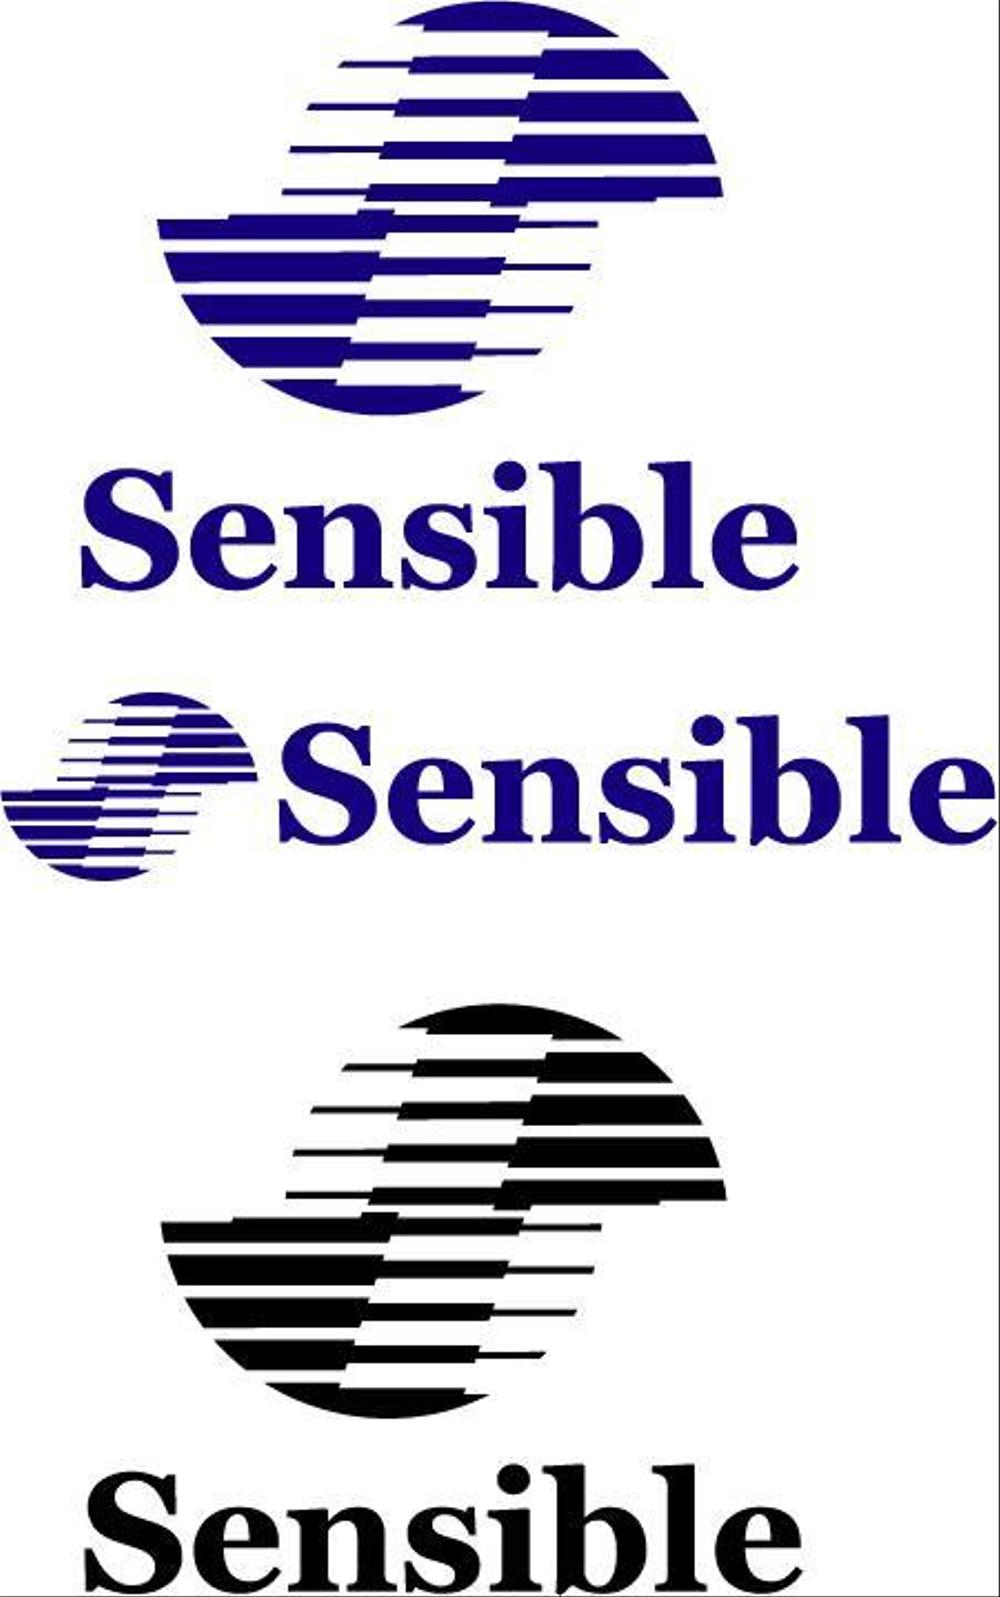 セミナー、コンサルティング運営会社「Sensible」のロゴ